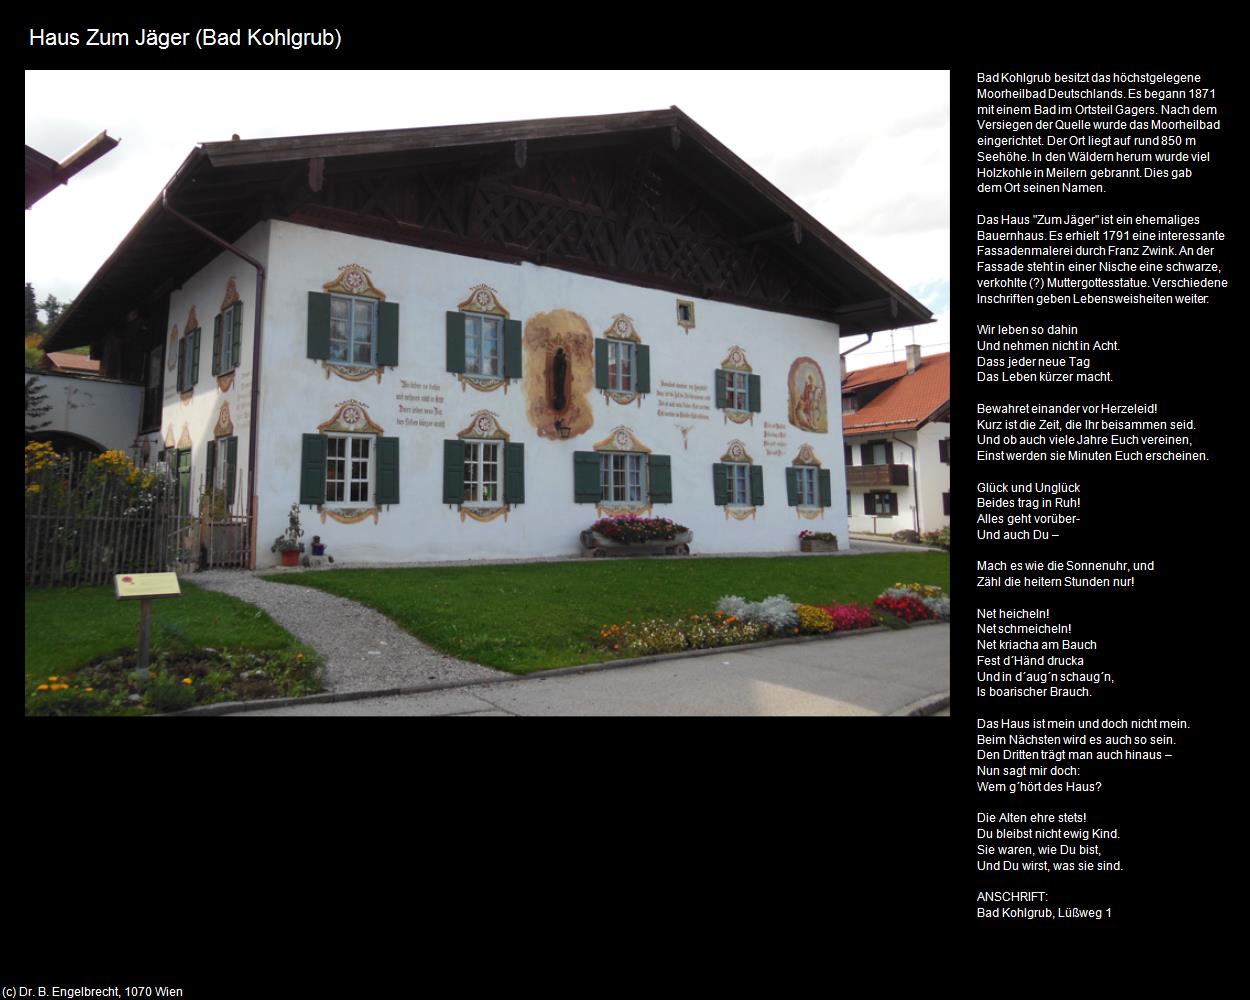 Haus Zum Jäger (Bad Kohlgrub) in Kulturatlas-BAYERN